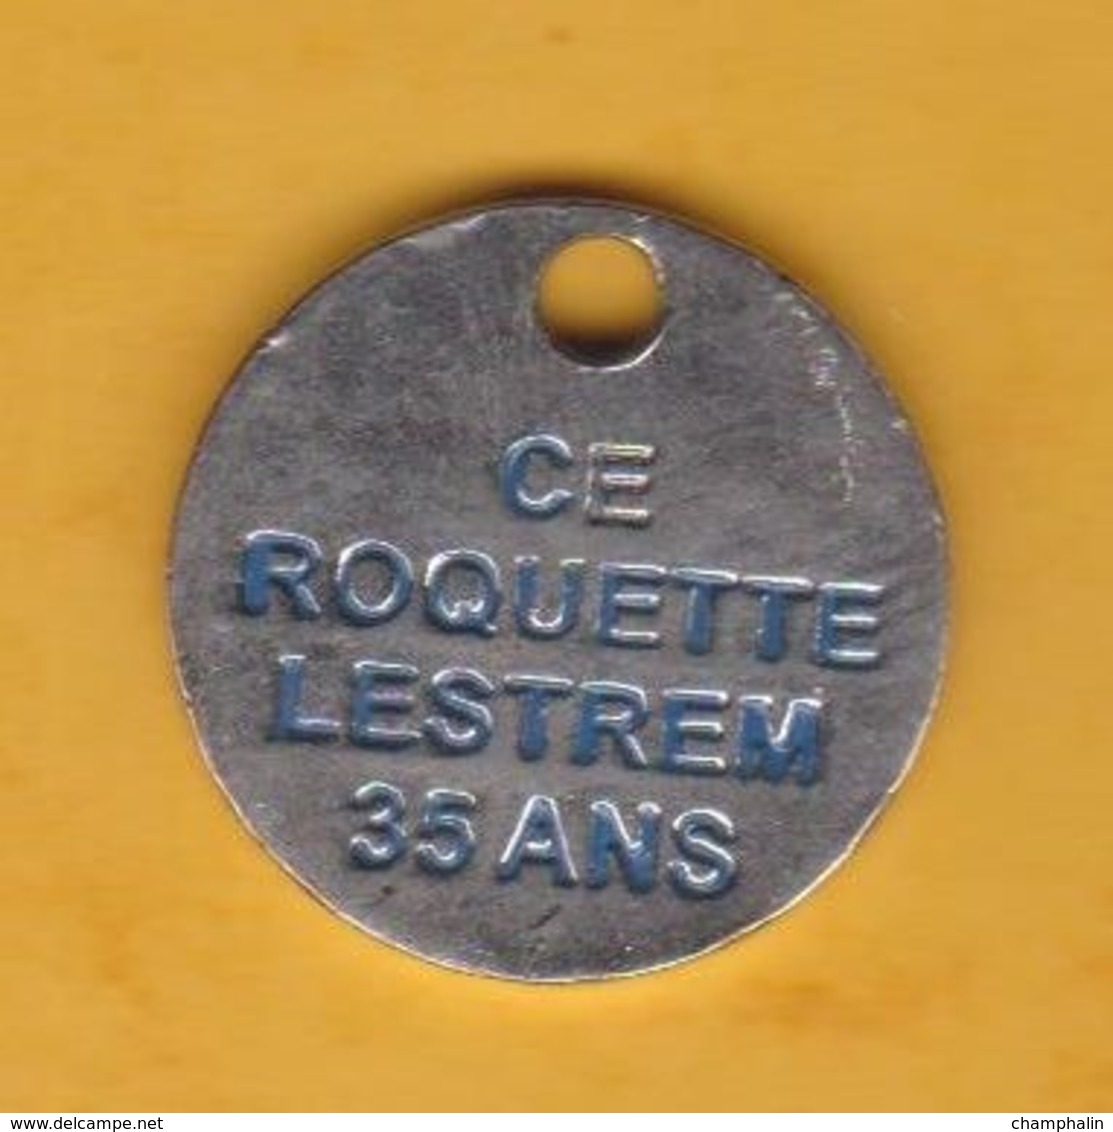 Jeton De Caddie En Métal - Roquette Frères à Lestrem (62) - 35 Ans CE - Ingrédients Alimentaires - Jetons De Caddies